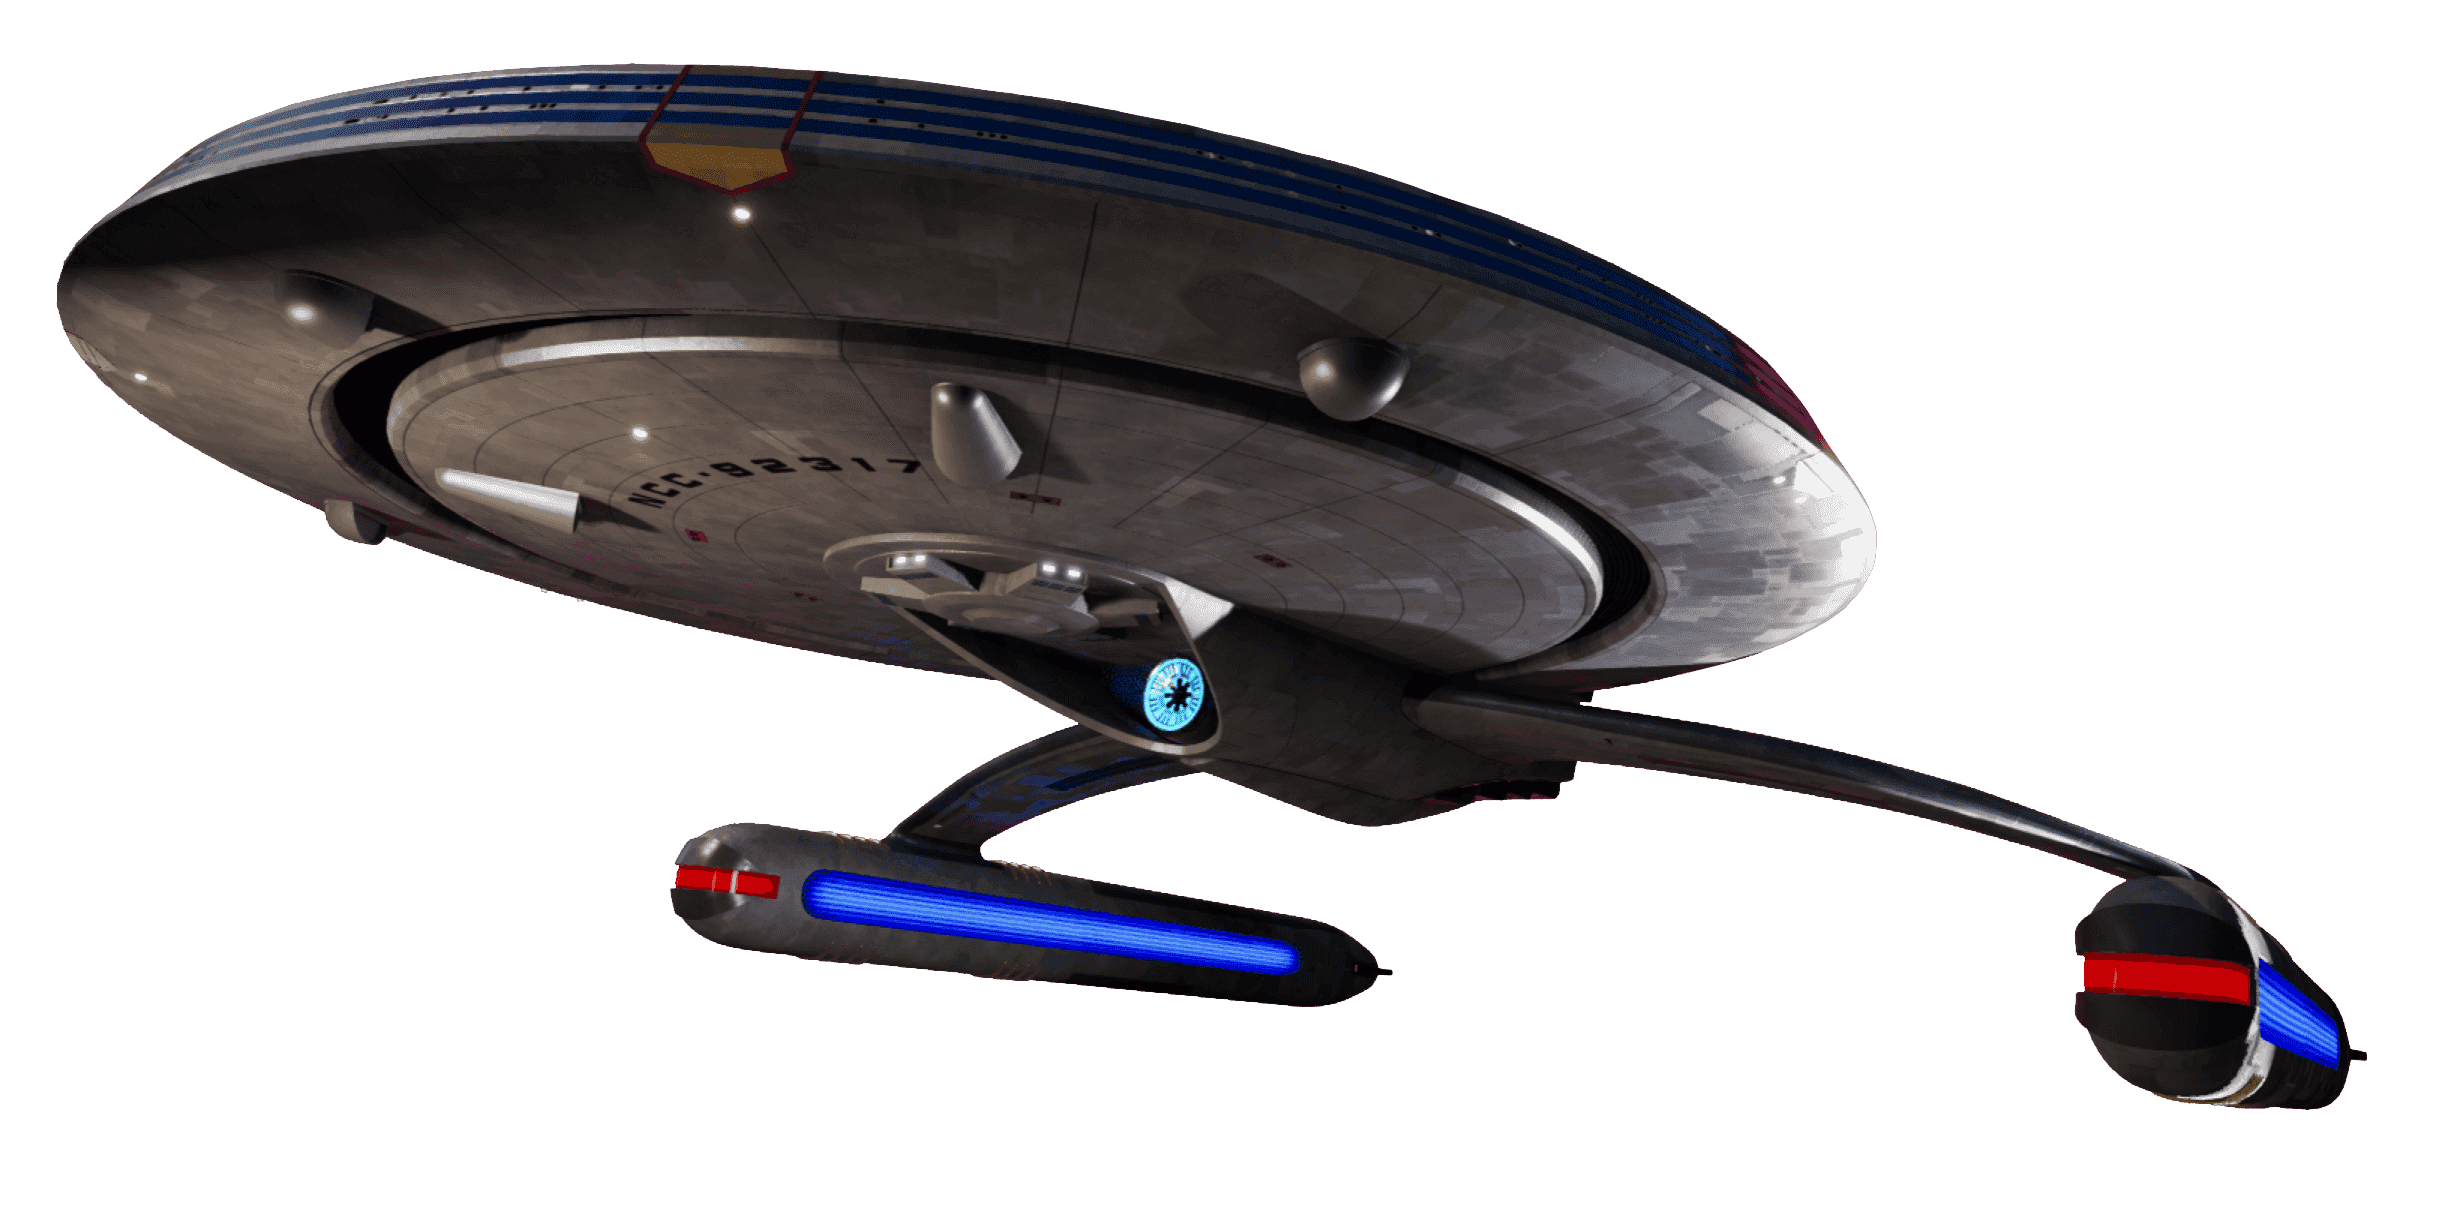 Star Trek Resurgence Is an Intriguing Blend of Classic Trek and Modern  Games Storytelling - CNET